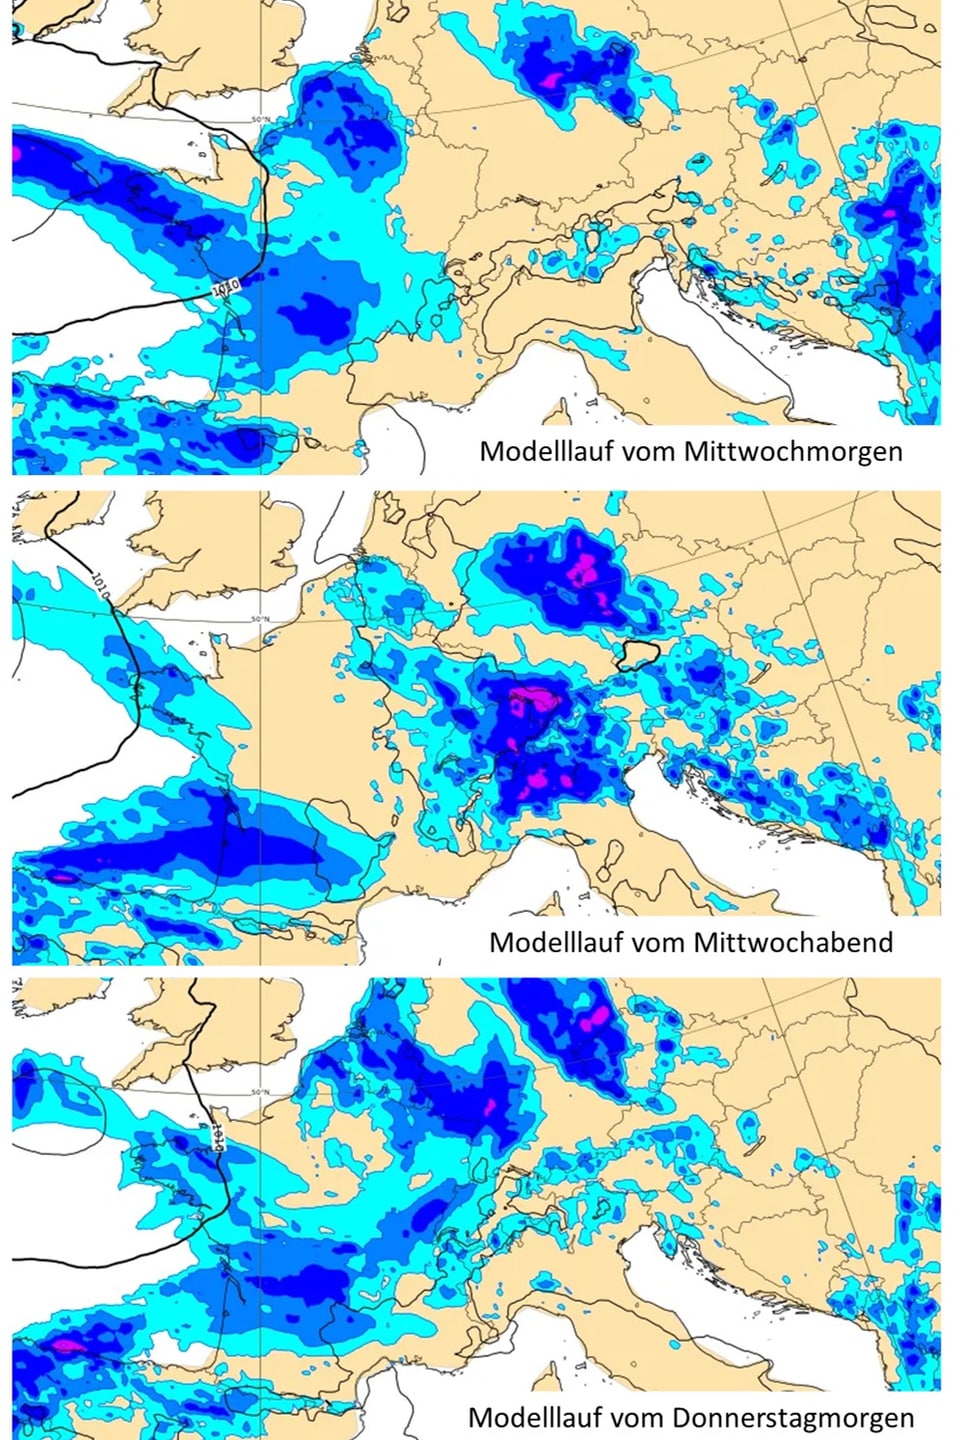 Wettermodellkarten für Mittwochmorgen, Mittwochabend und Donnerstagmorgen mit Niederschlagsprognosen.